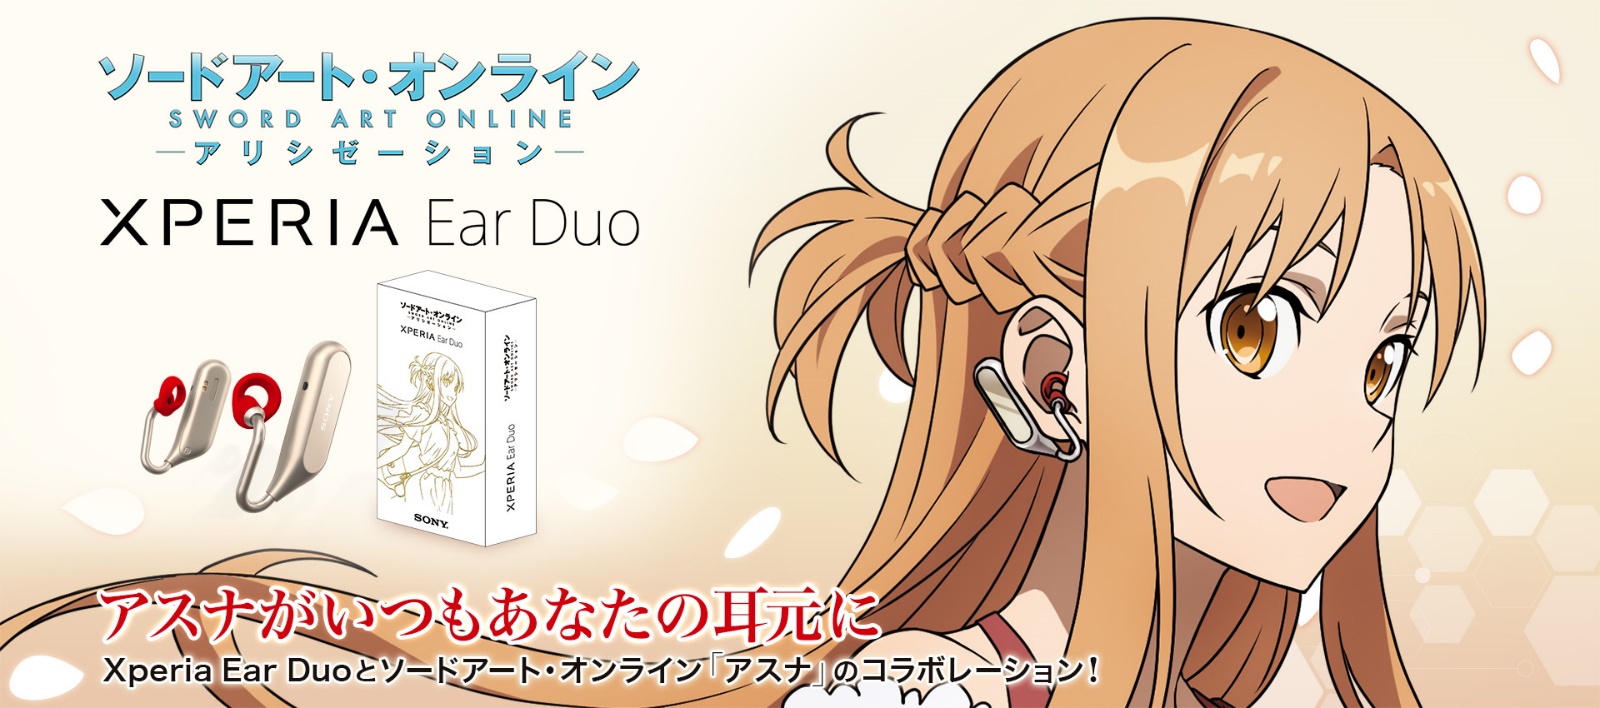 ソードアート・オンライン × Xperia Ear Duo コラボレーション